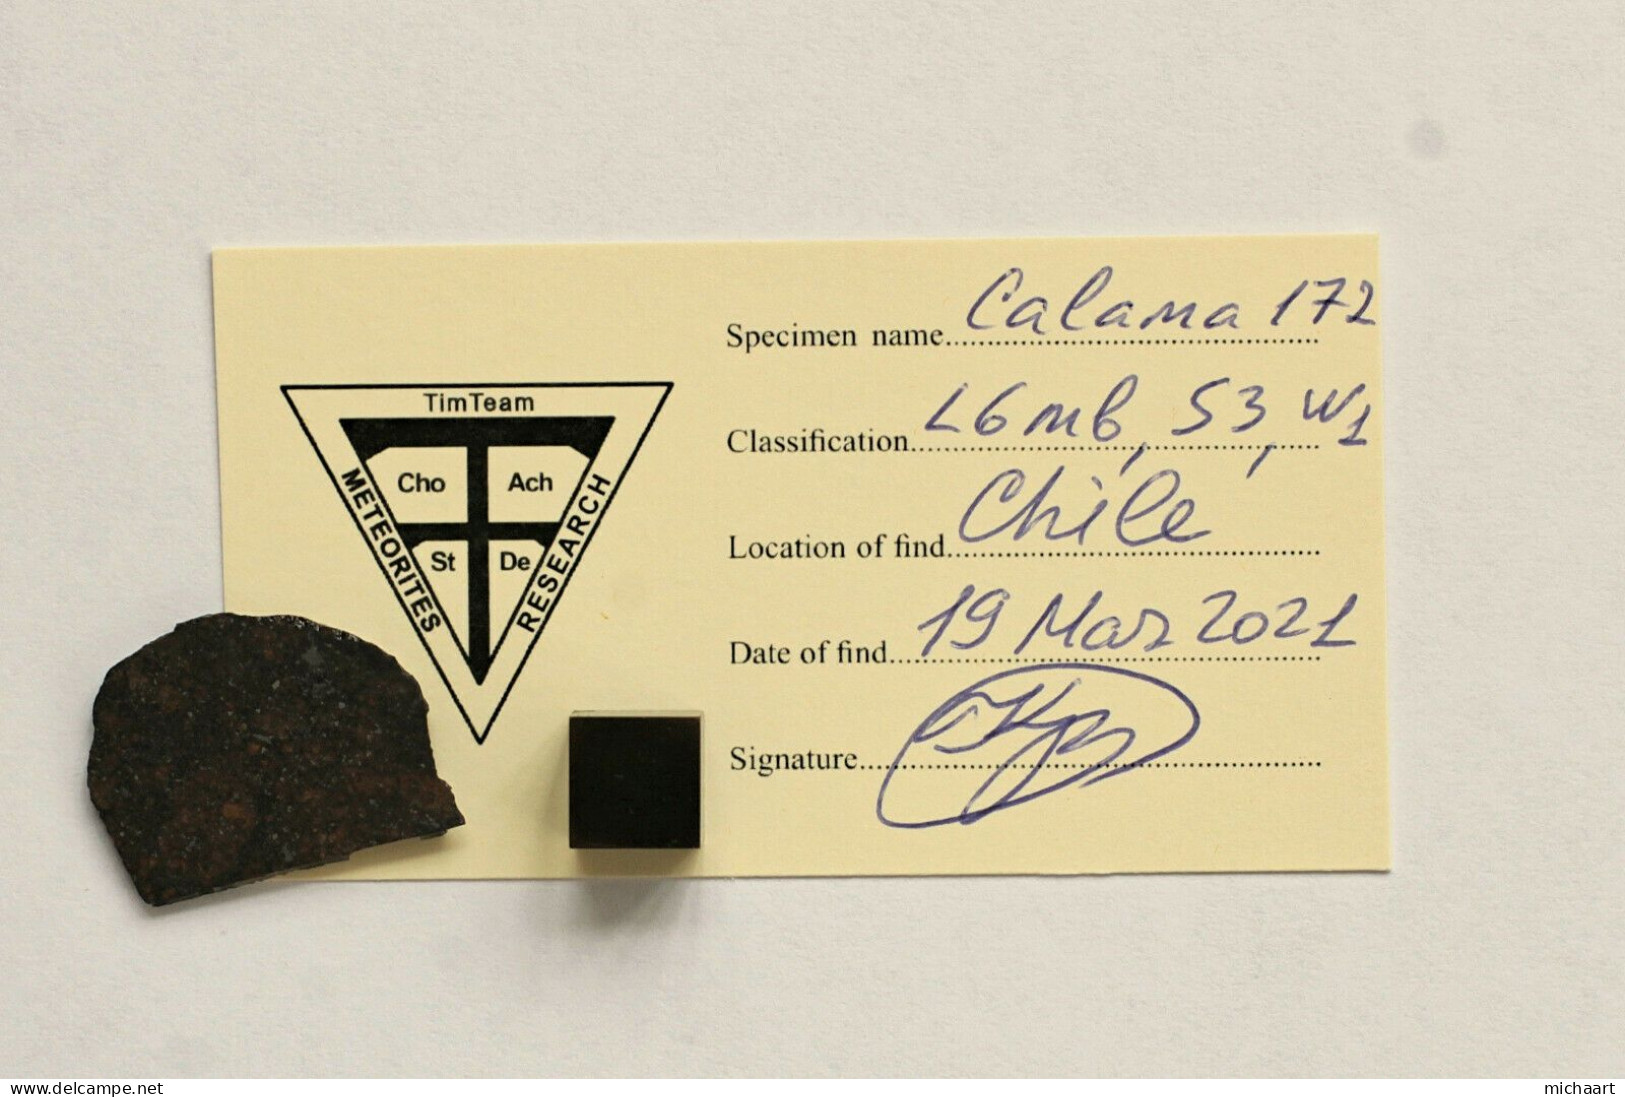 Meteorite Ordinary Chondrite Slice 3.31 G. Calama 172 (L6-mb,S3,W1) Chile 03086 - Meteoriti